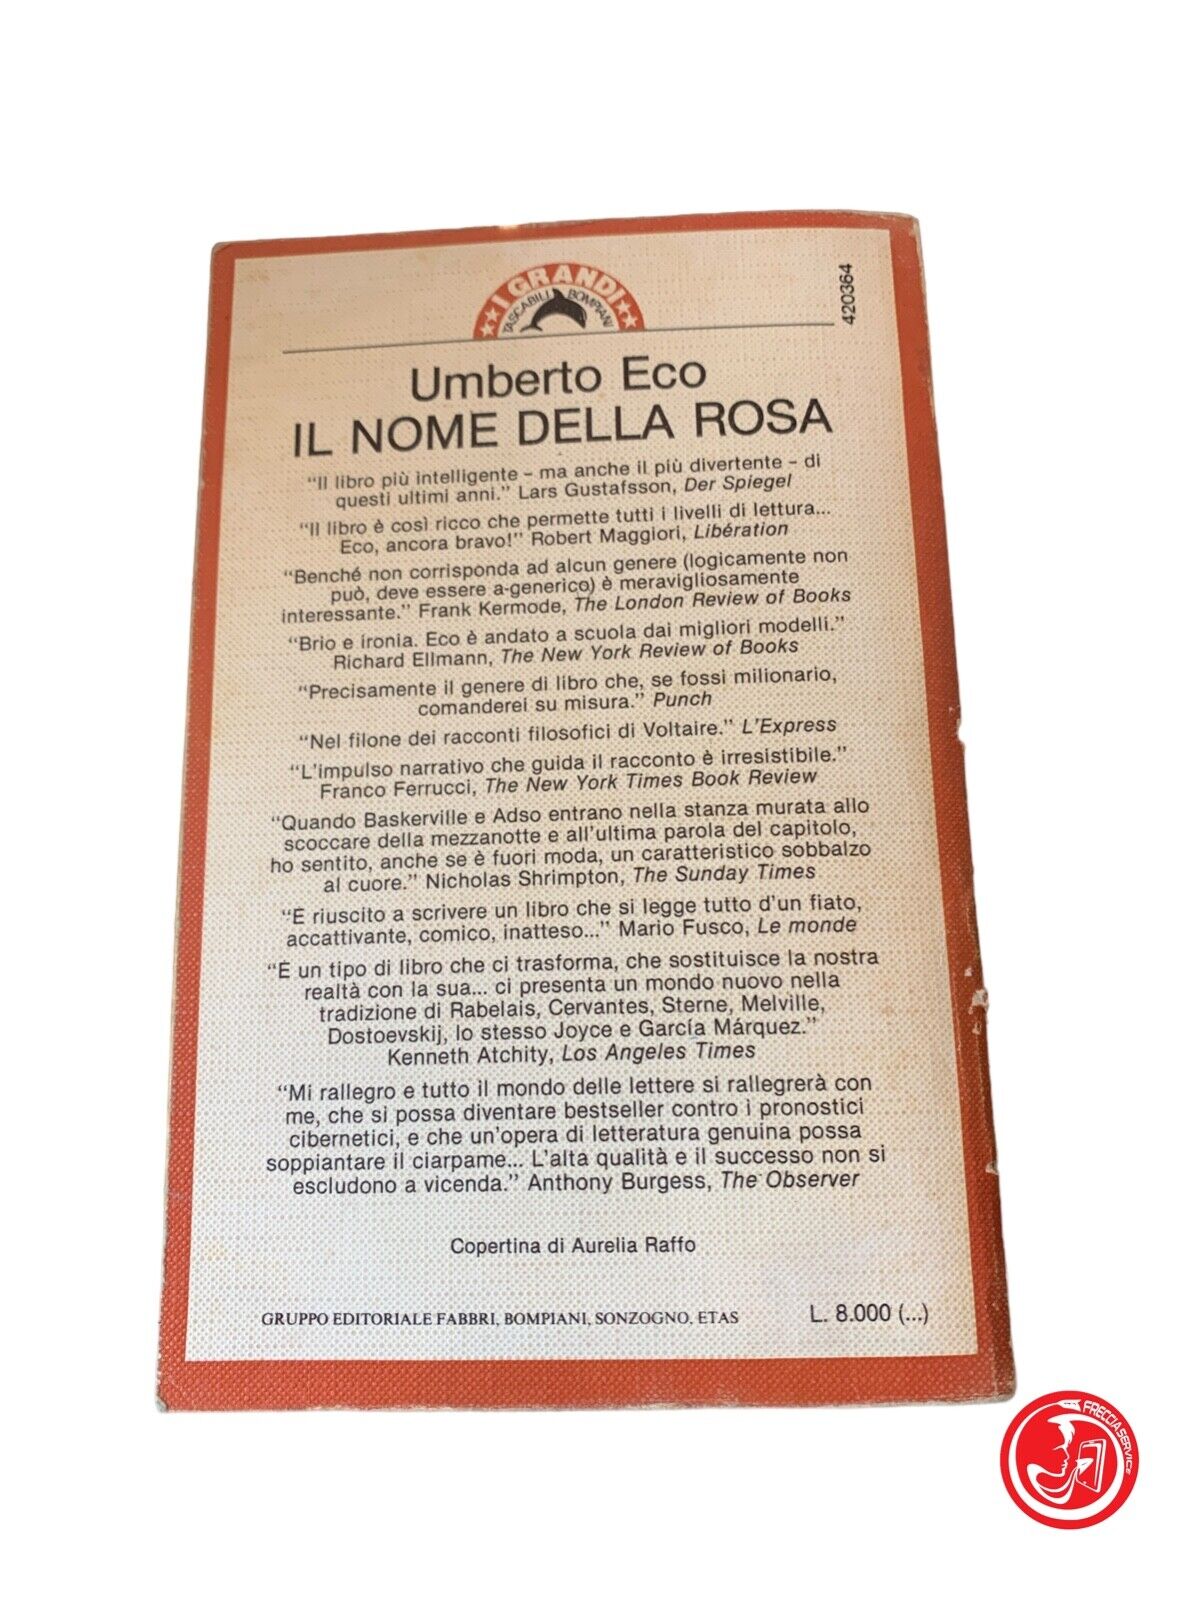 Il nome della rosa - Umberto Eco - Bompiani 1984